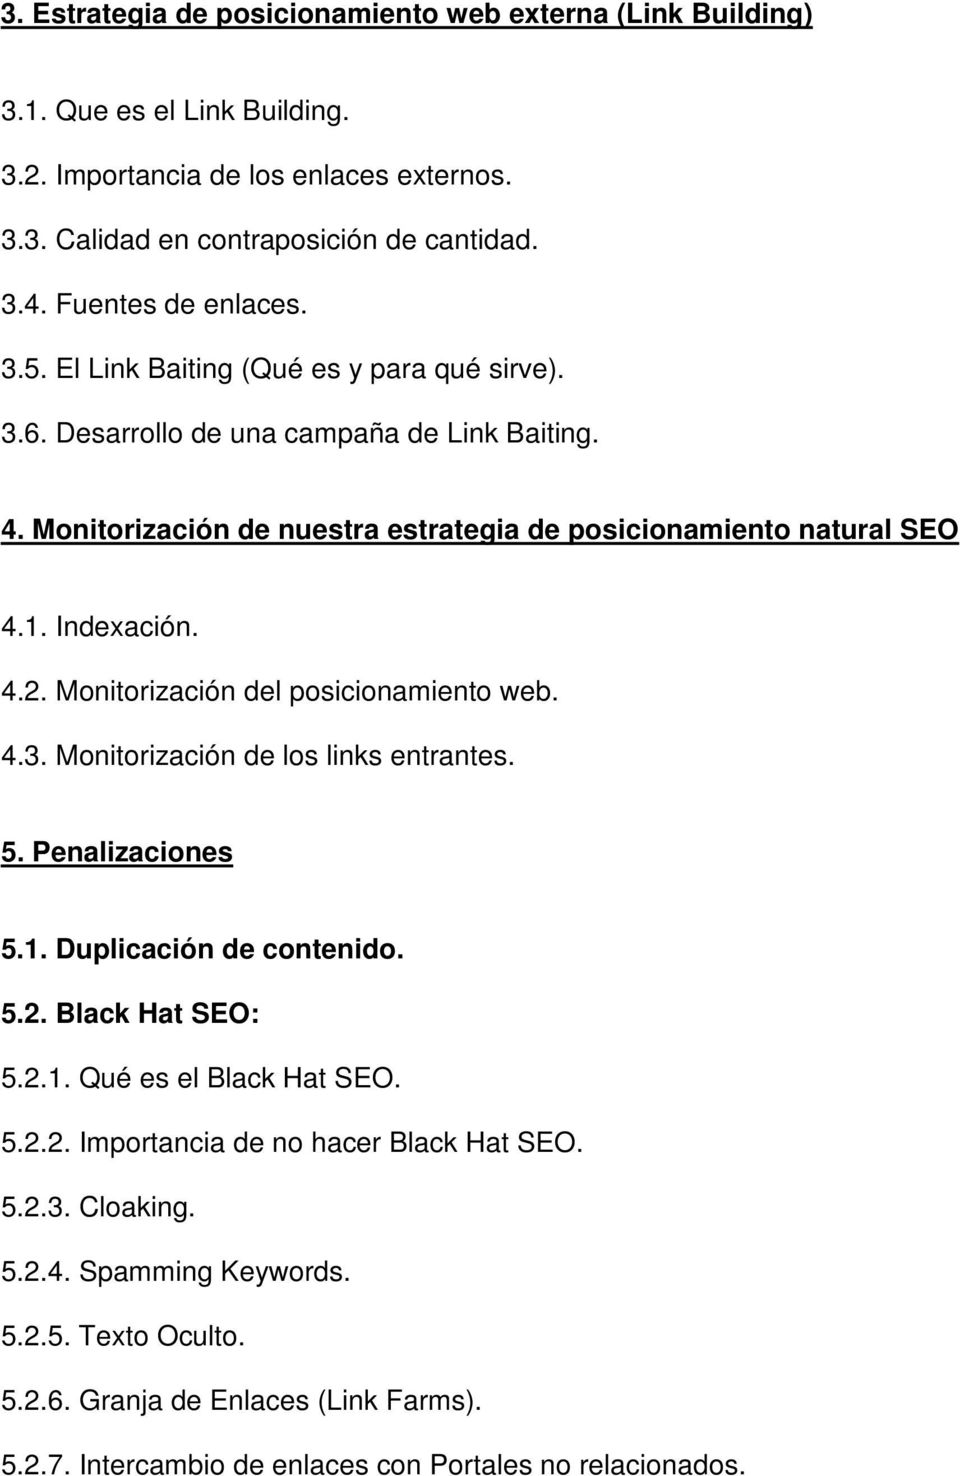 Indexación. 4.2. Monitorización del posicionamiento web. 4.3. Monitorización de los links entrantes. 5. Penalizaciones 5.1. Duplicación de contenido. 5.2. Black Hat SEO: 5.2.1. Qué es el Black Hat SEO.